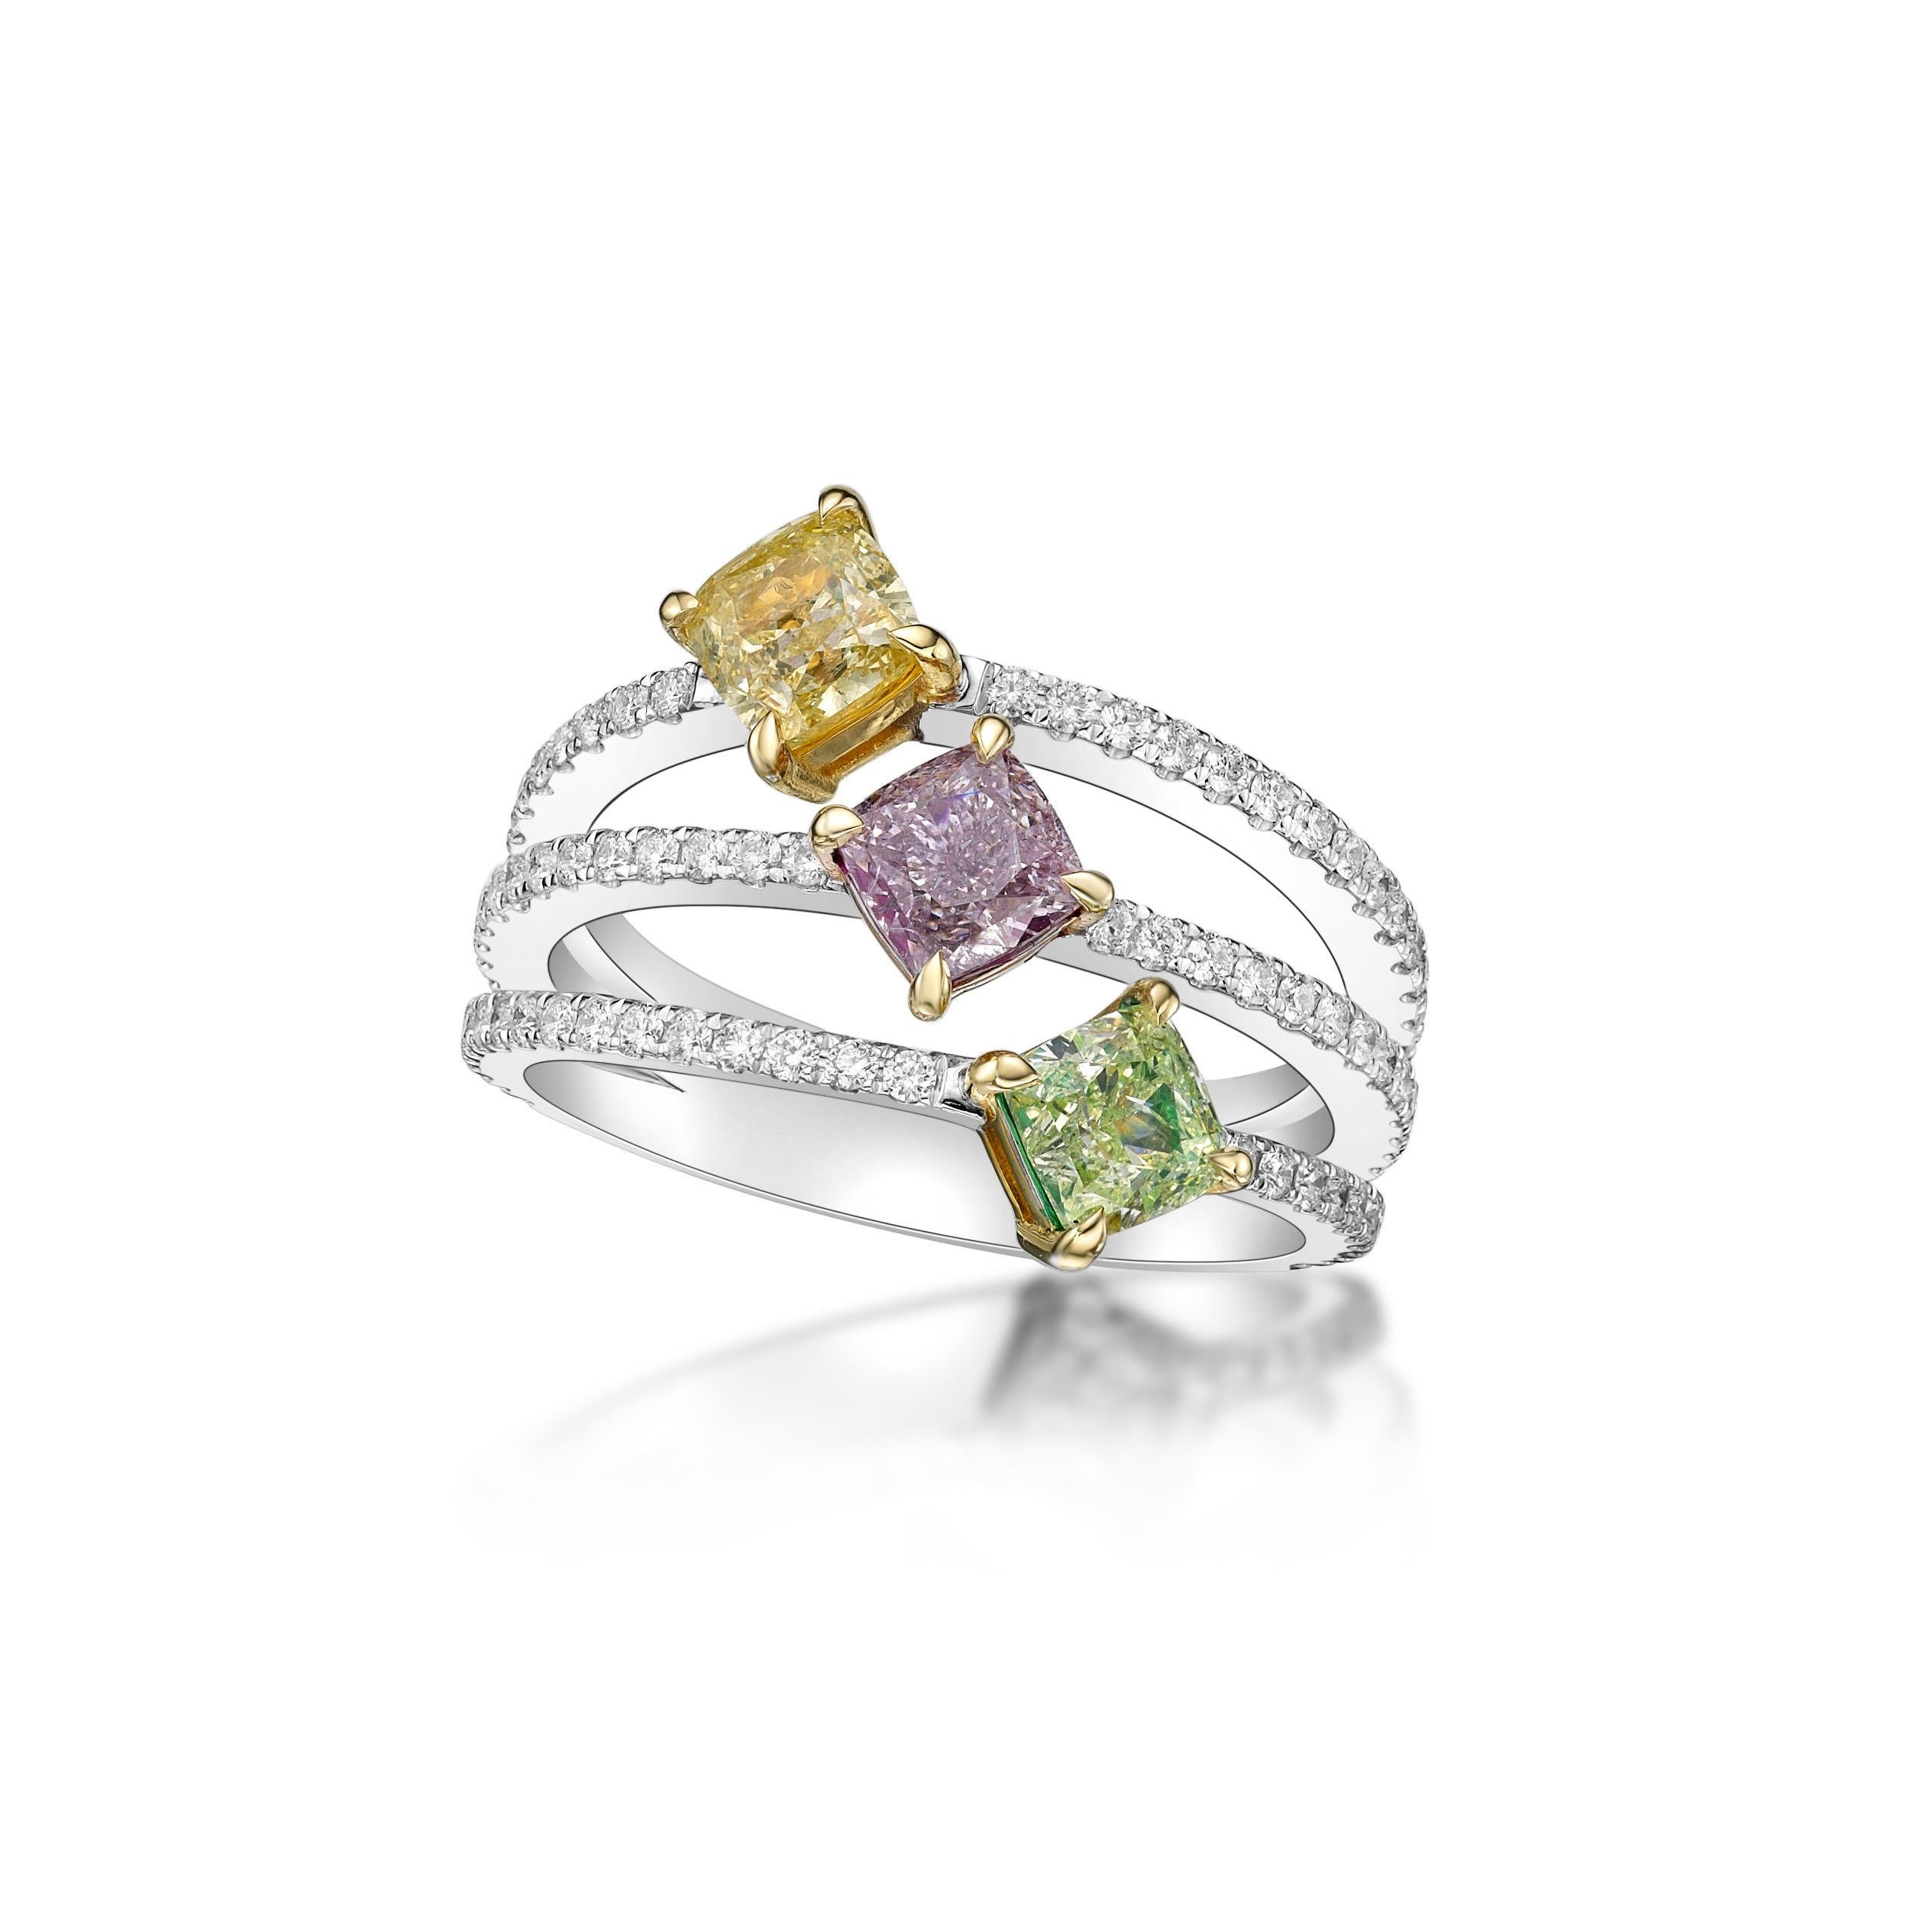 3 zentrale Diamanten von insgesamt 1,67ct mit einem einzigartigen GIA-zertifizierten natürlichen grünen, rosa und gelben Diamanten. 
86 kleine Diamanten von insgesamt 0,50ct


Aus dem Museumsgewölbe von Emilio Jewelry in der berühmten New Yorker